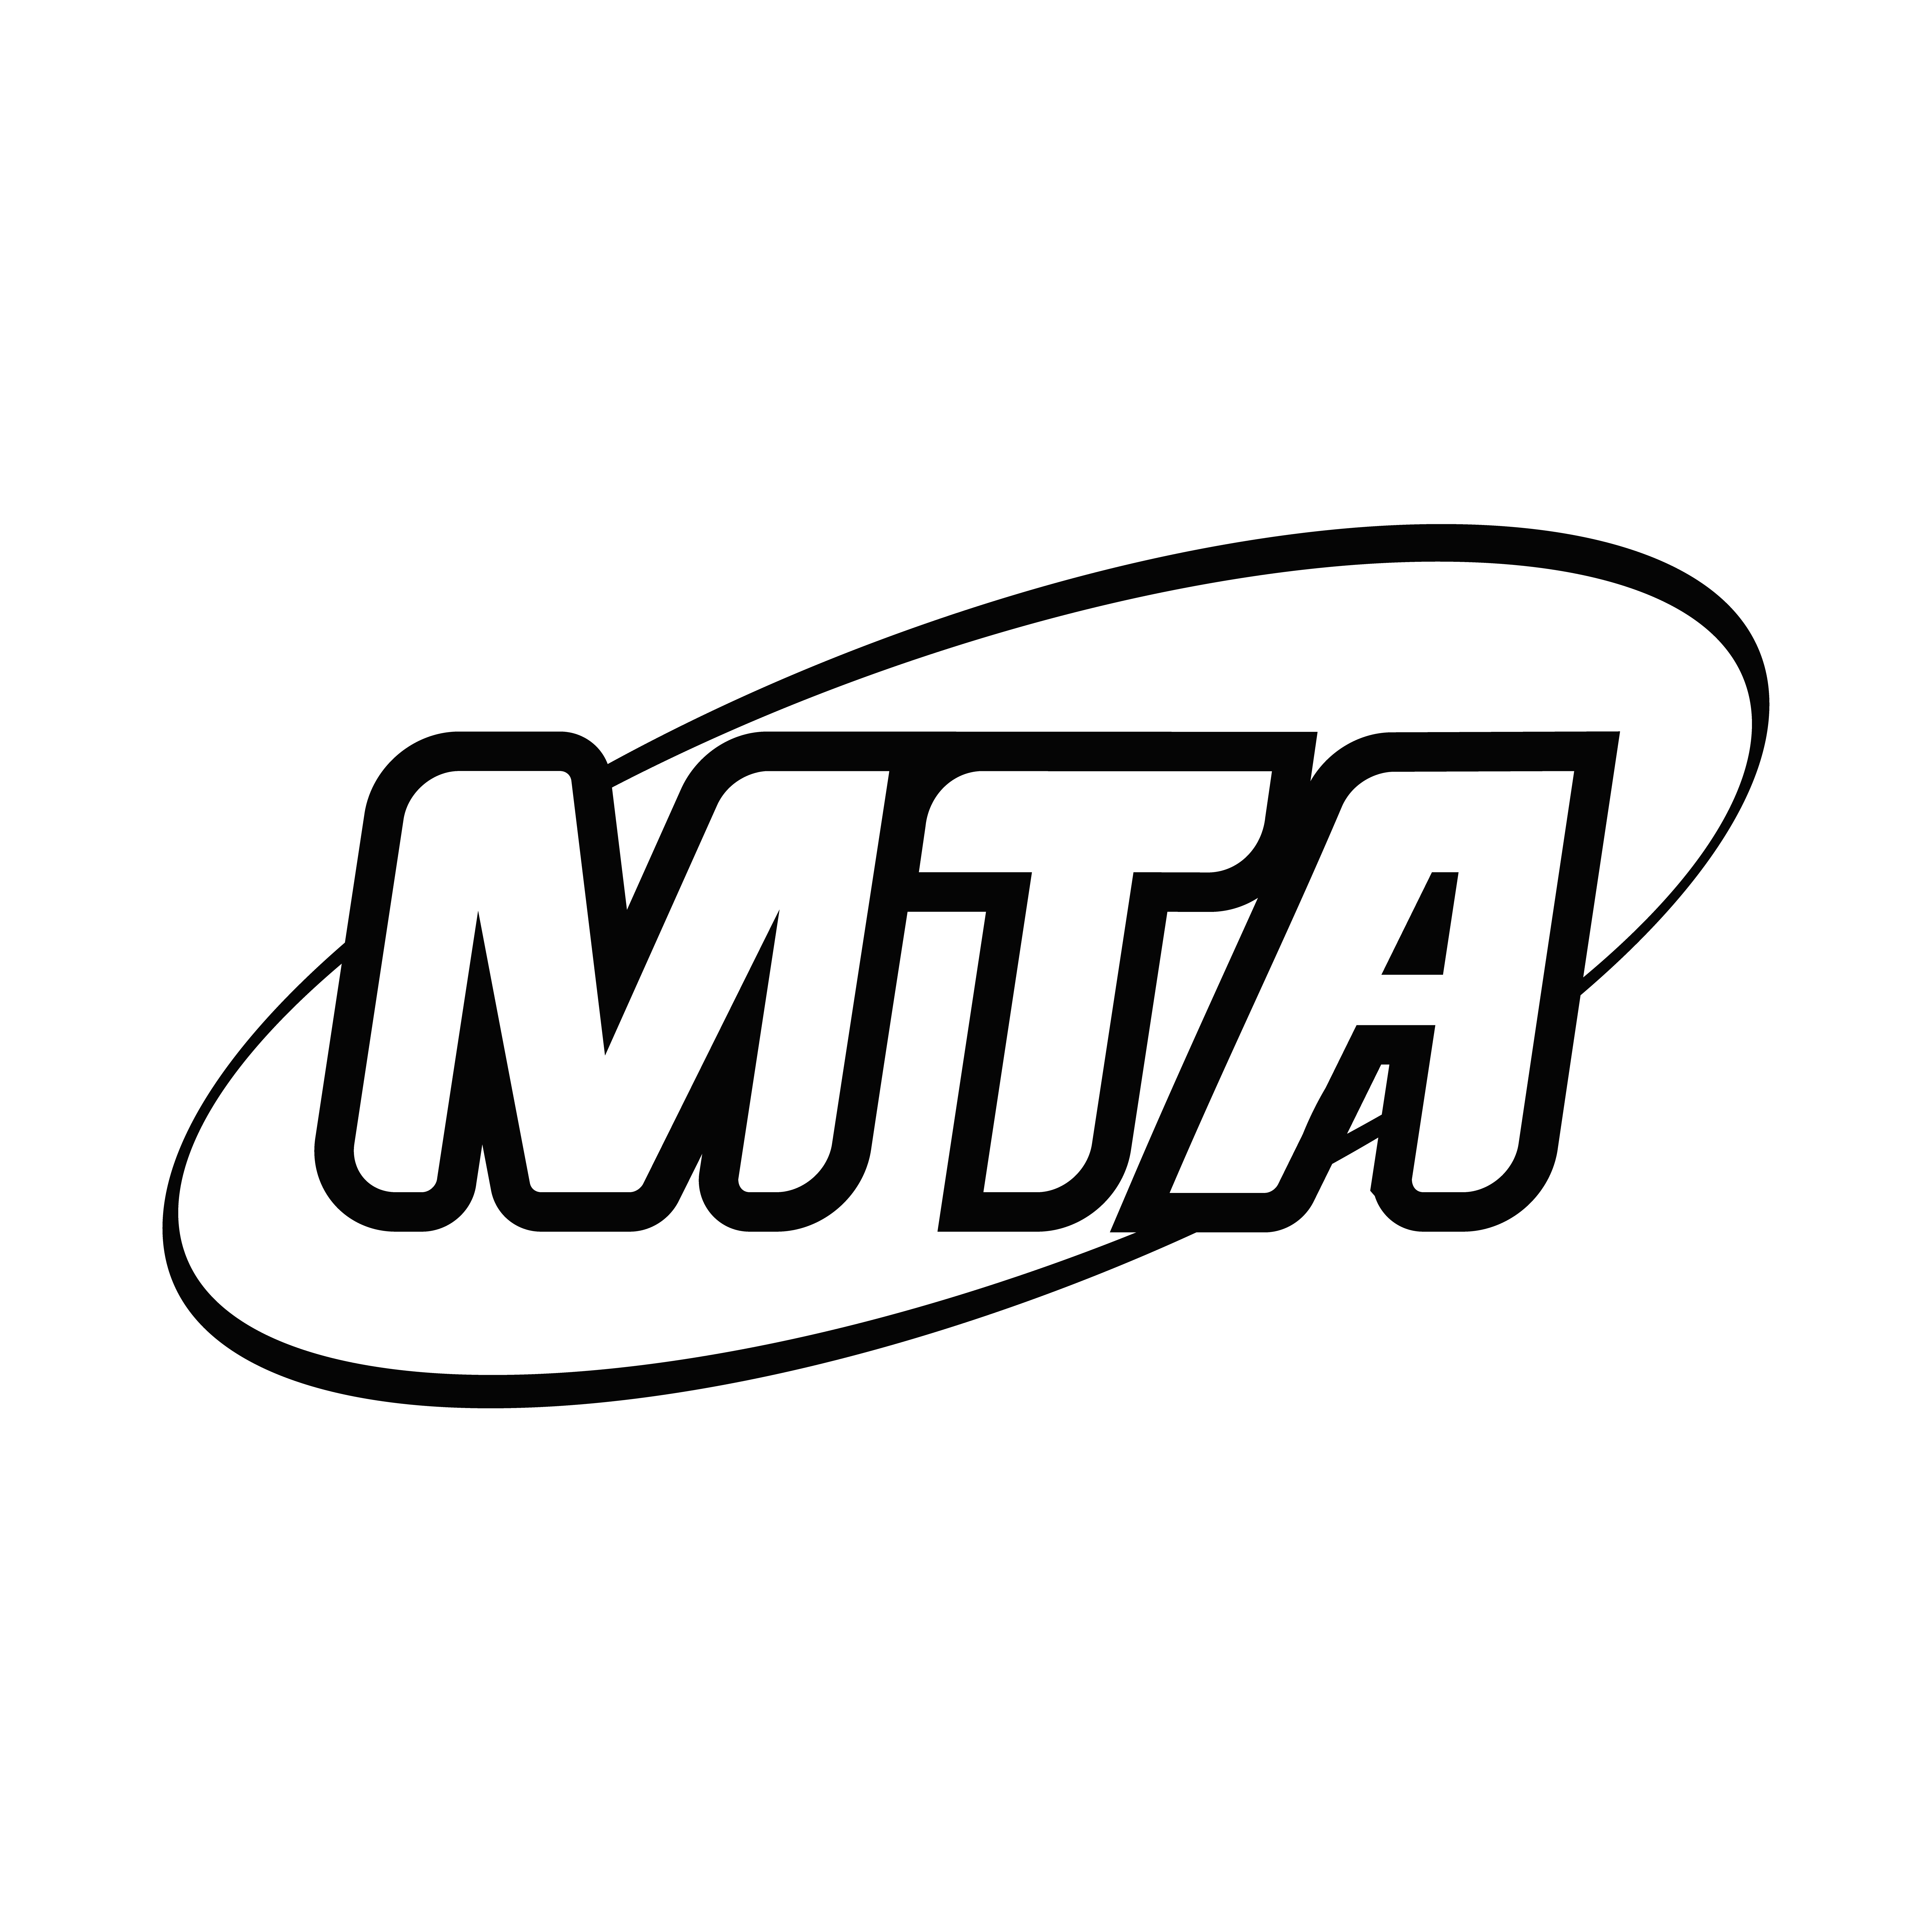 Logomarca MTA Panelas